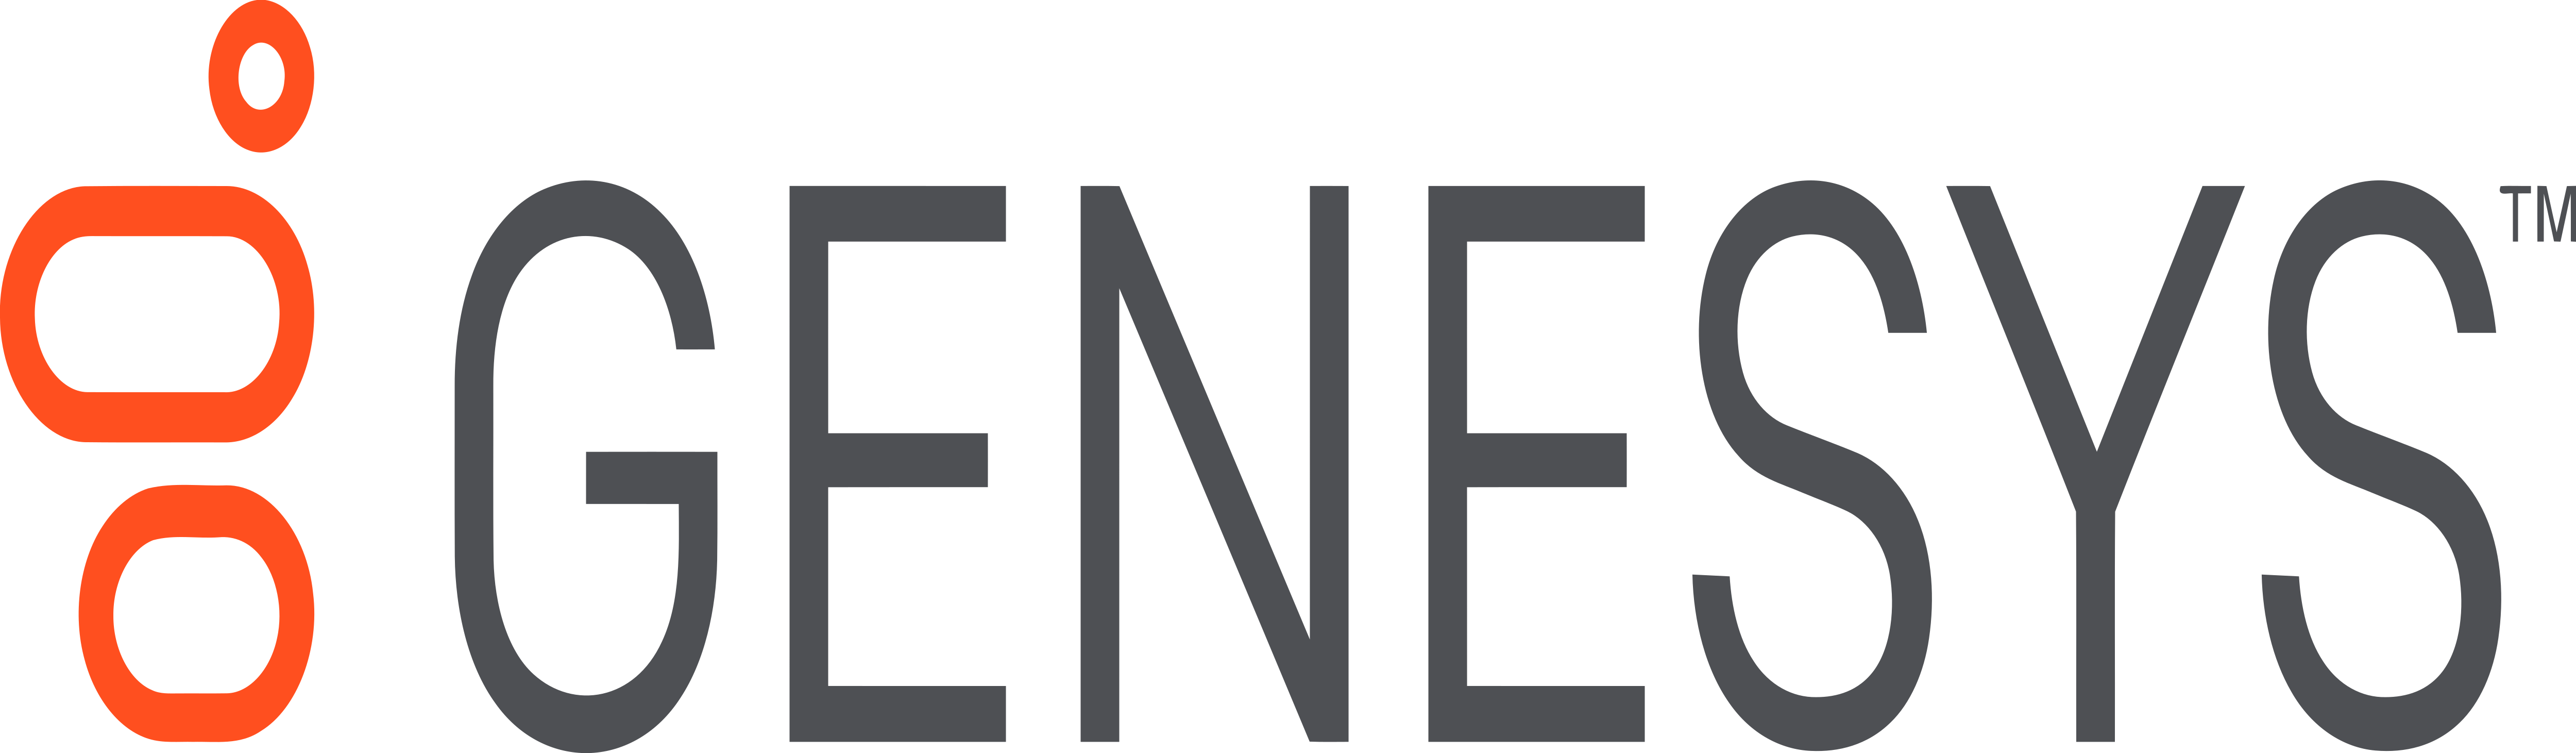 Genesys – Logos Download